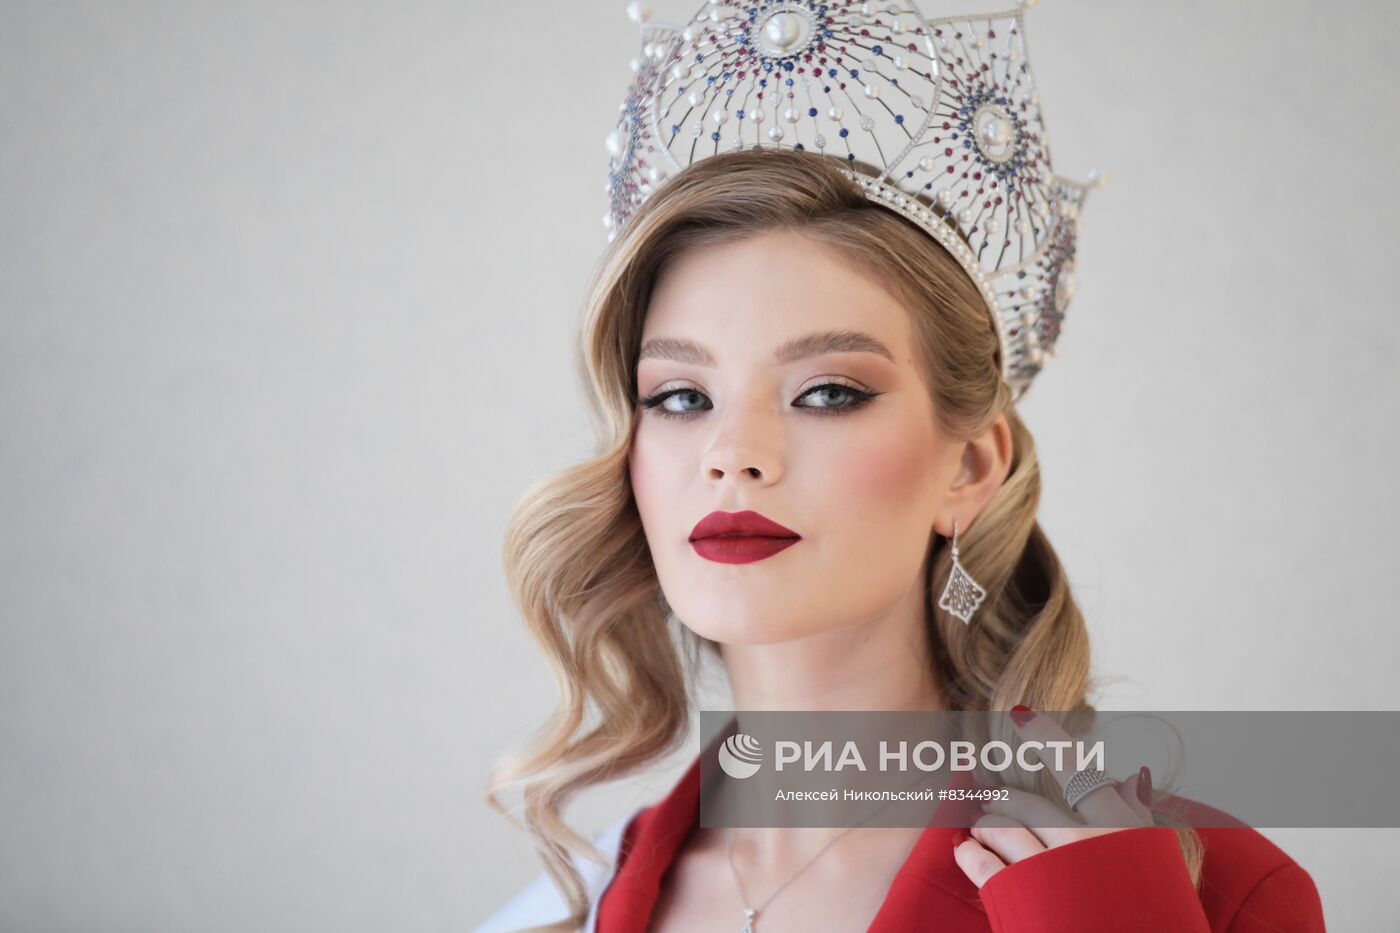 П/к Мисс Россия 2022 Анны Линниковой